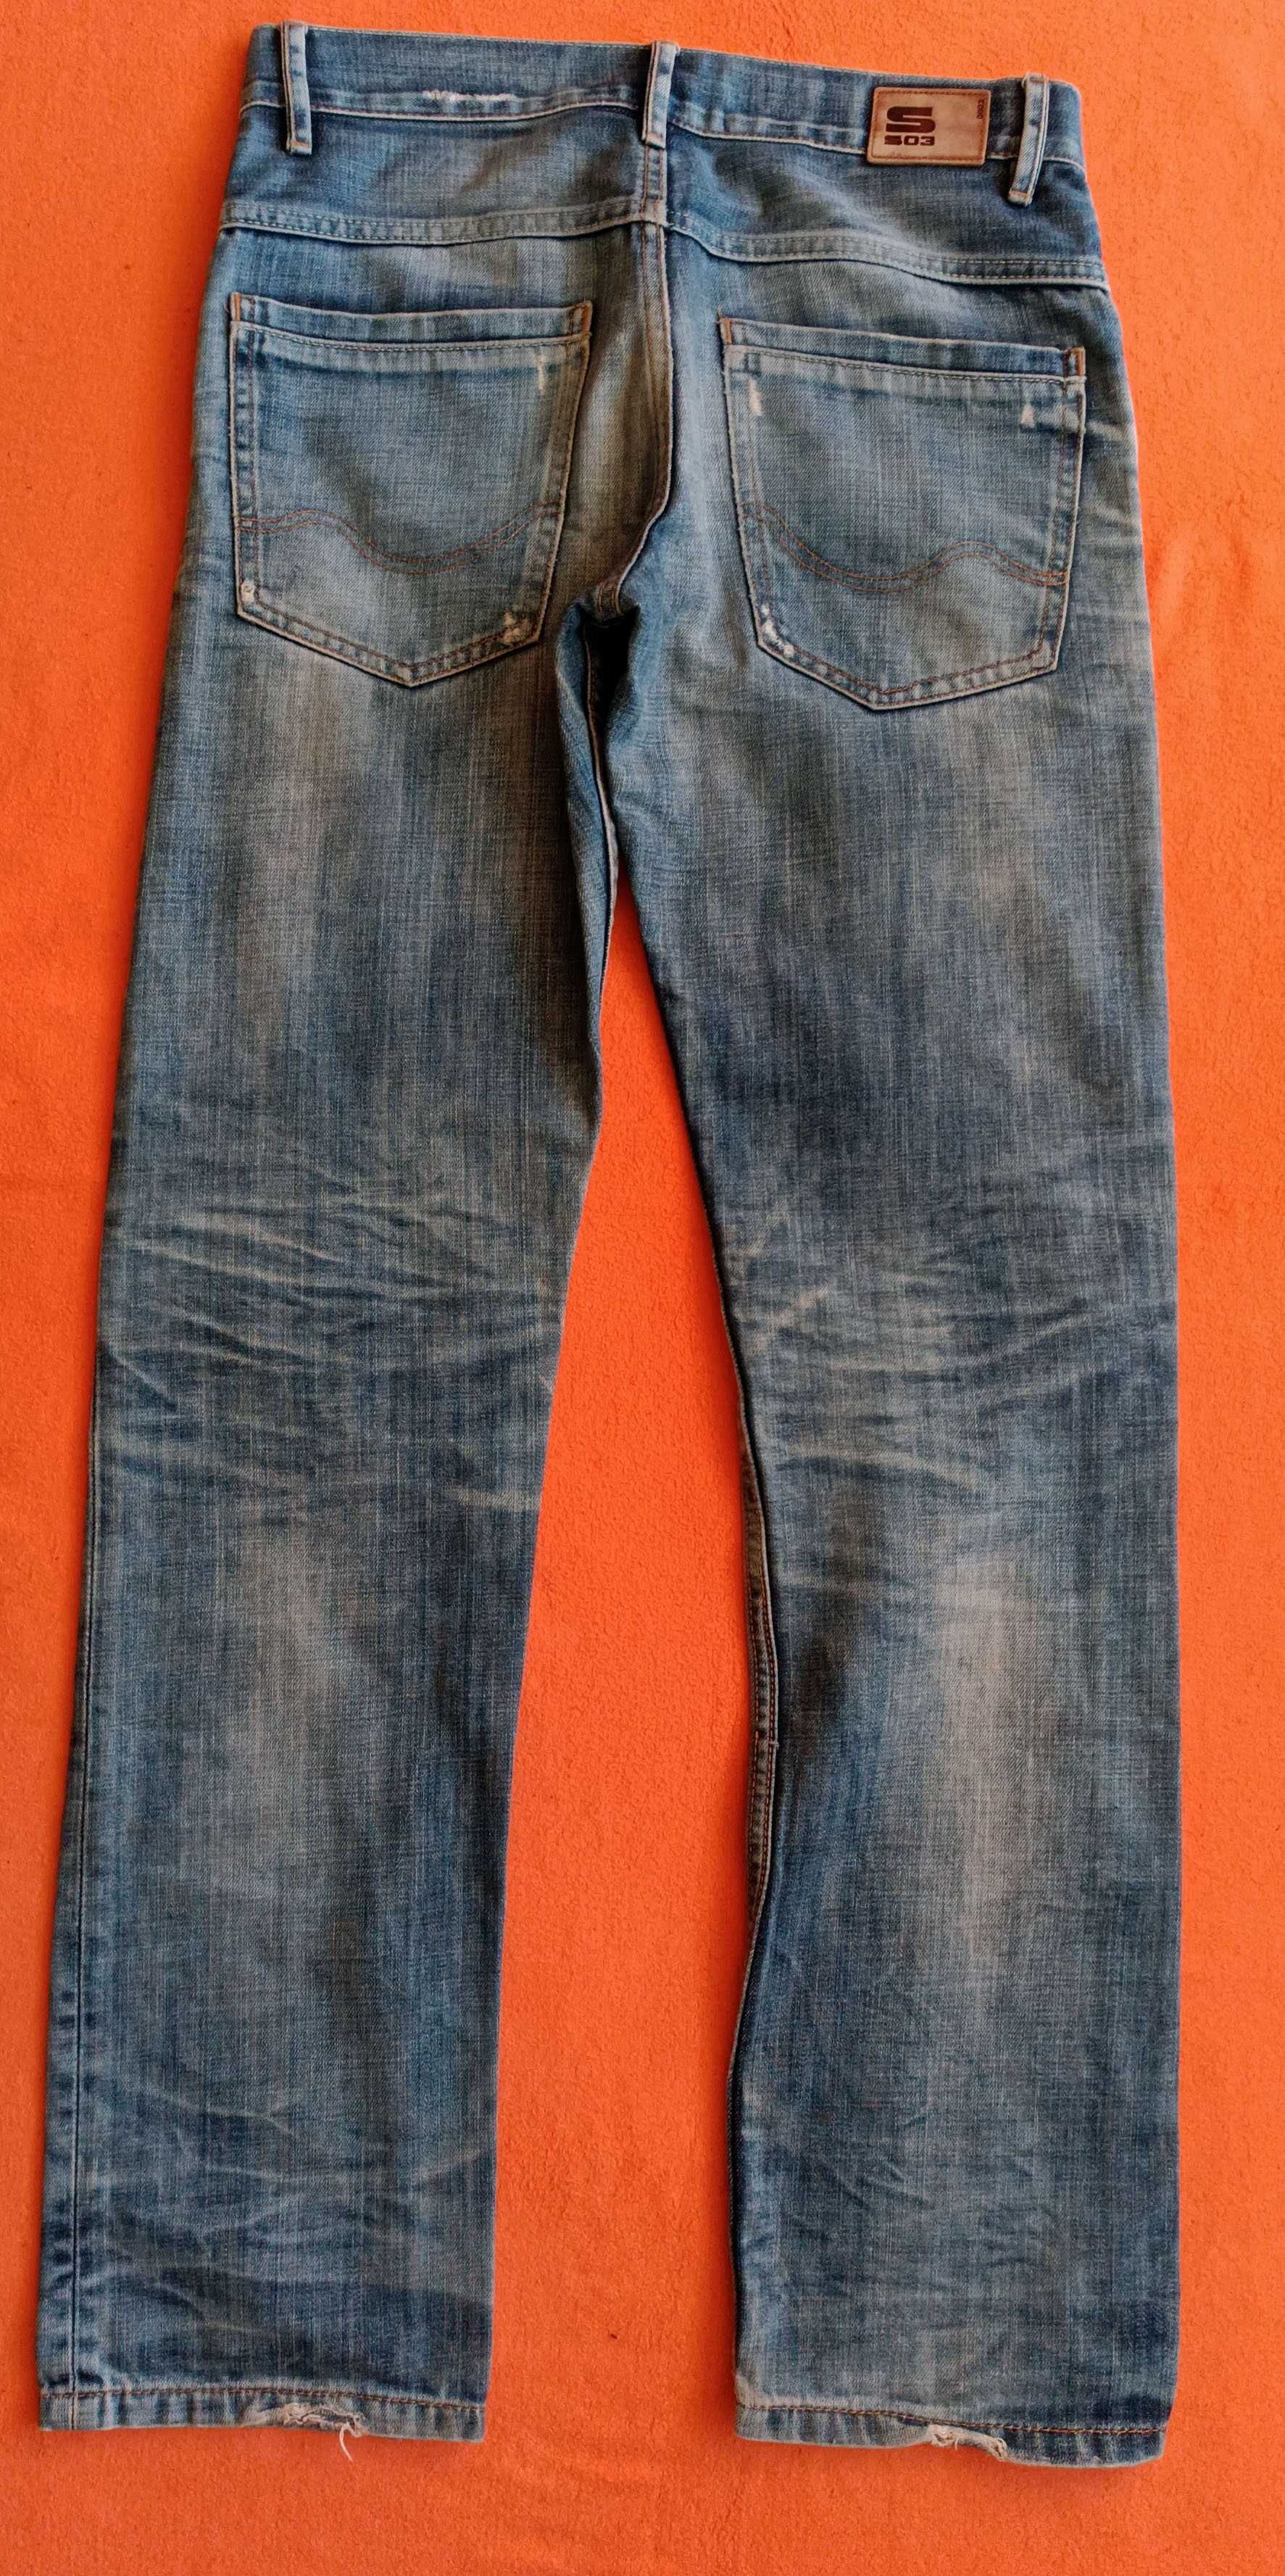 Spodnie SO3 jeans roz.38